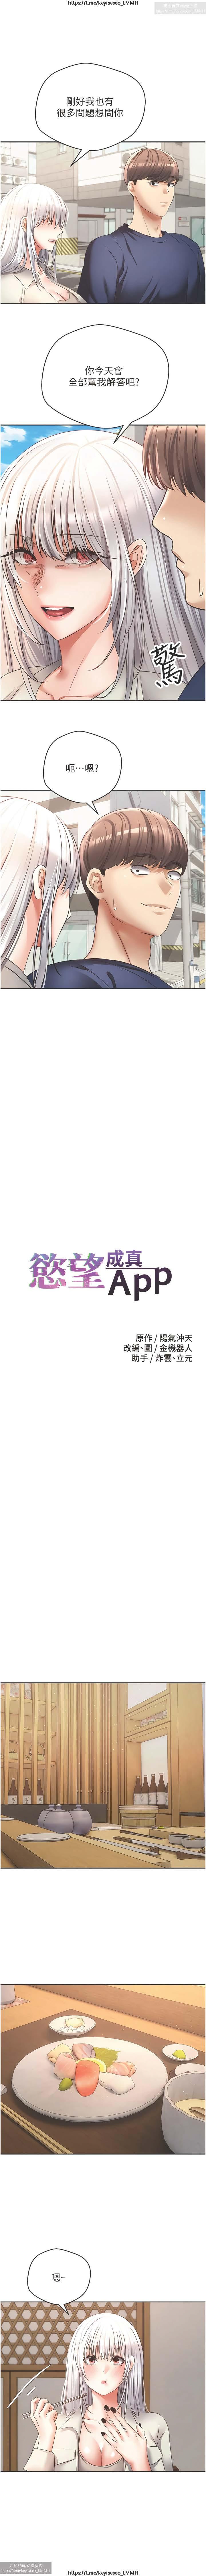 欲望成真App 28-55 271